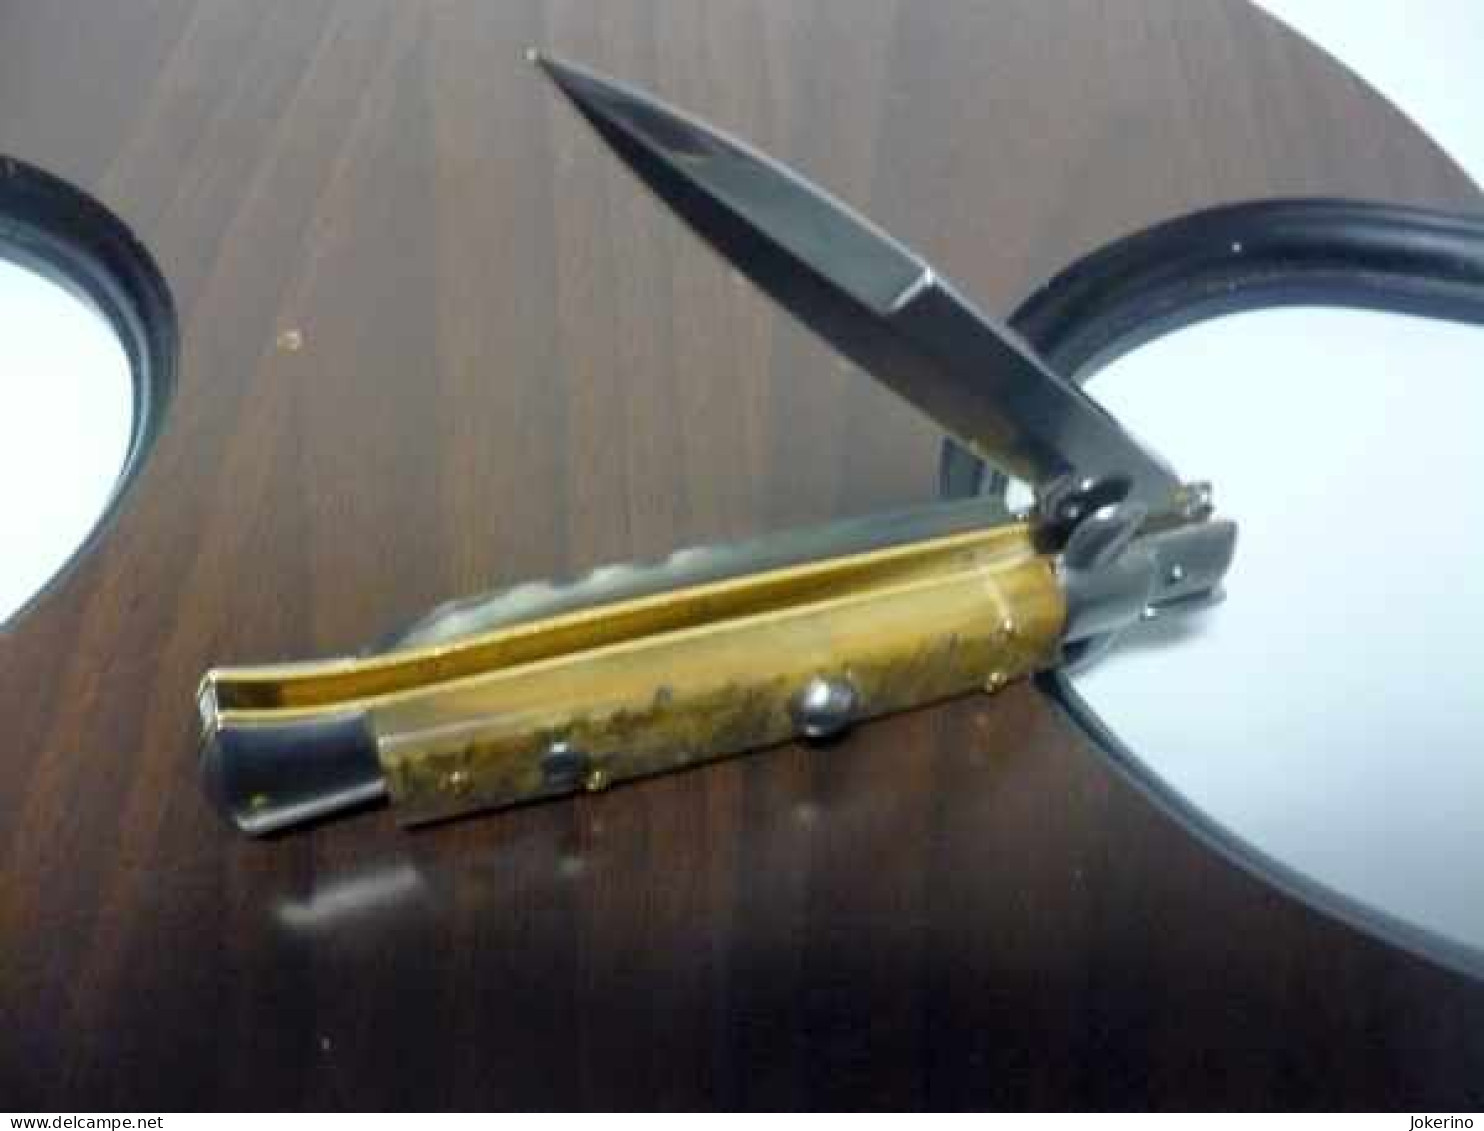 KNIFE-italian stiletto-Maniago -Frank Beltrame-23cm- corno pregiato di ariete bicolore Modello FB 23/63B - NOVITA'